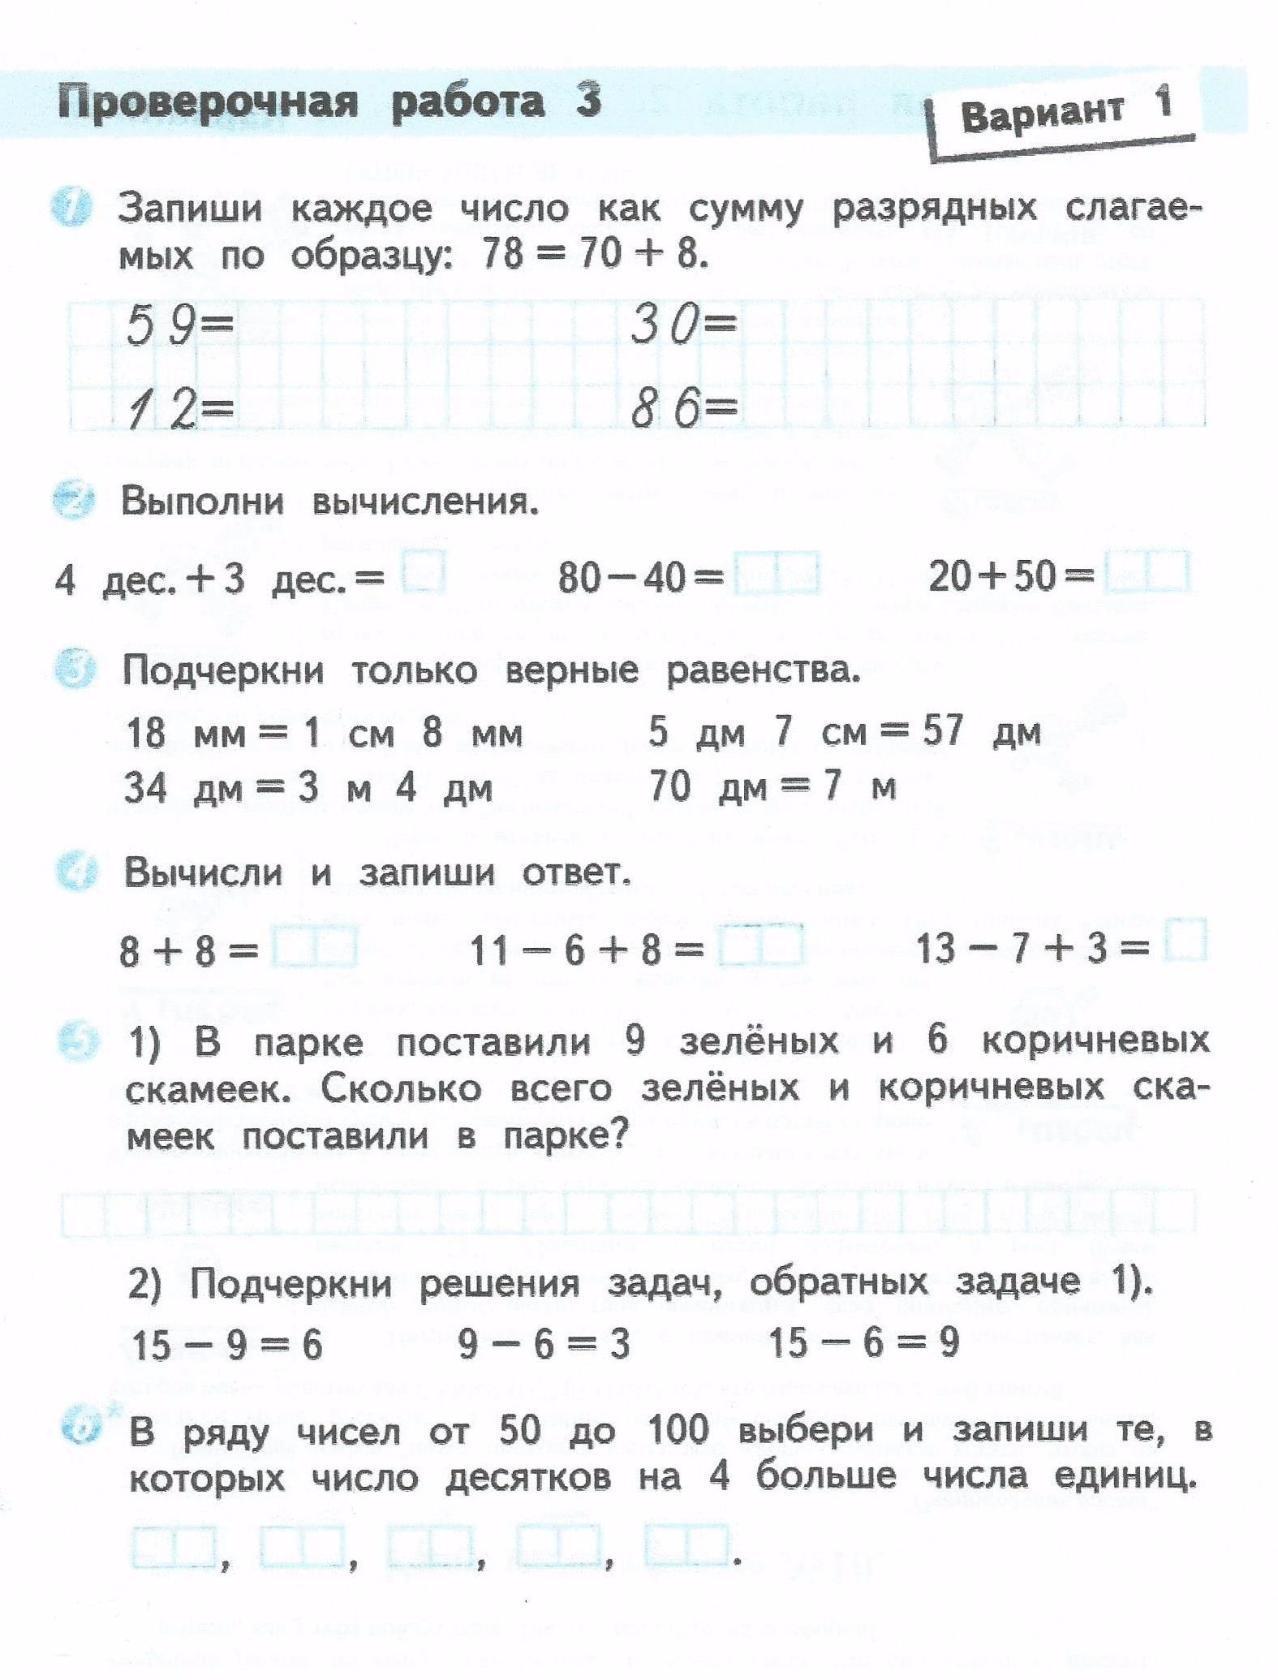 Математика 5 класс стр 146 проверочная работа